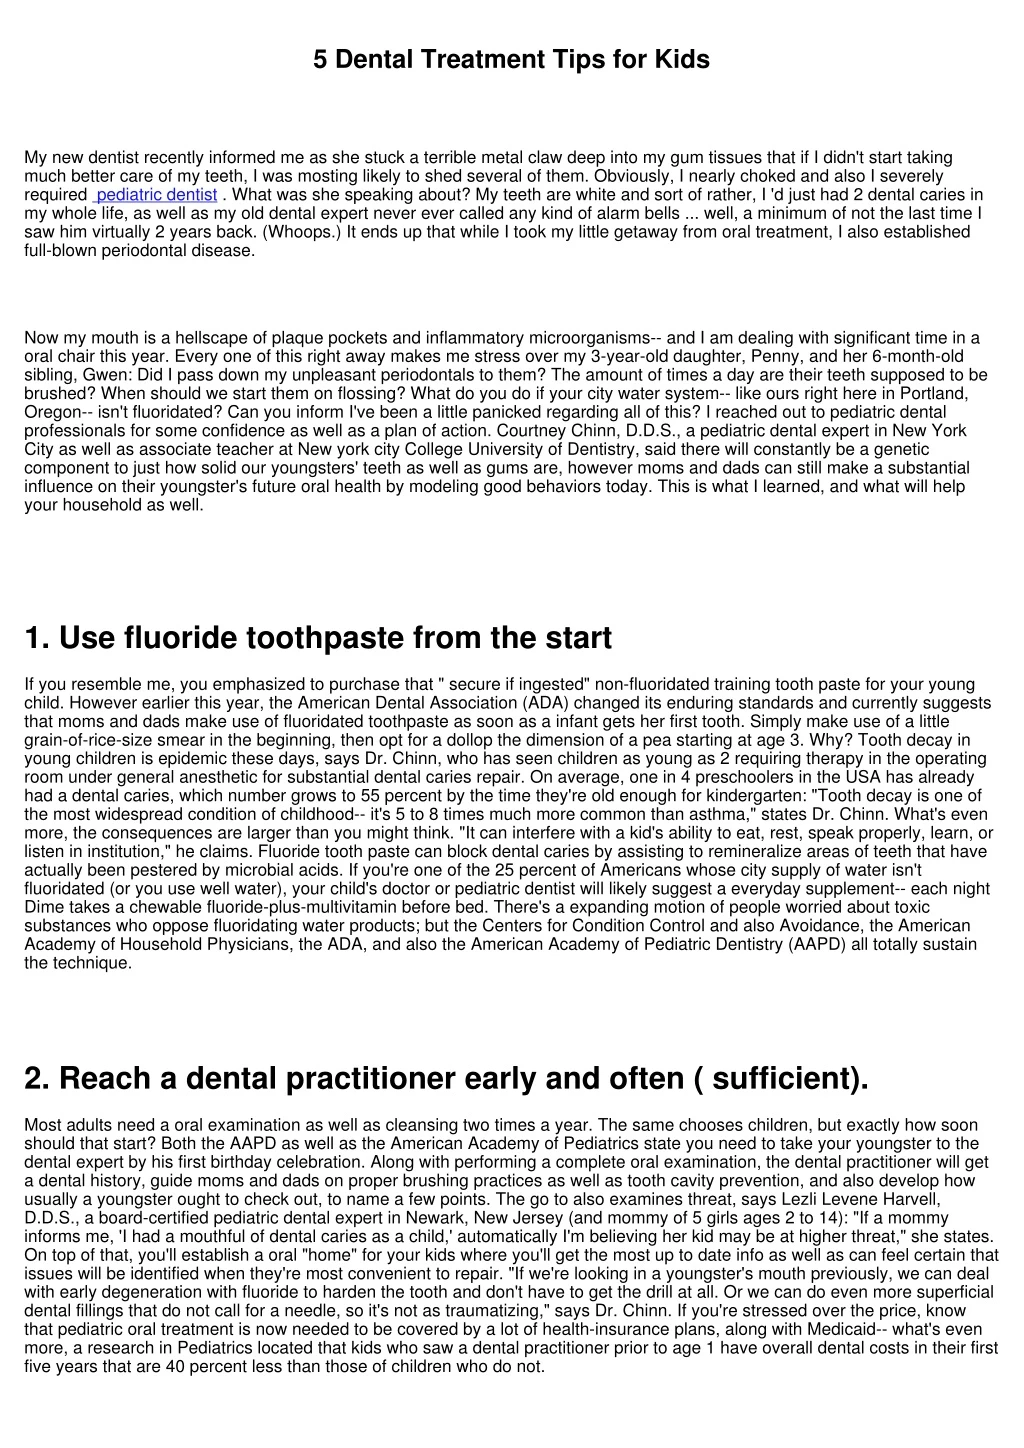 5 dental treatment tips for kids